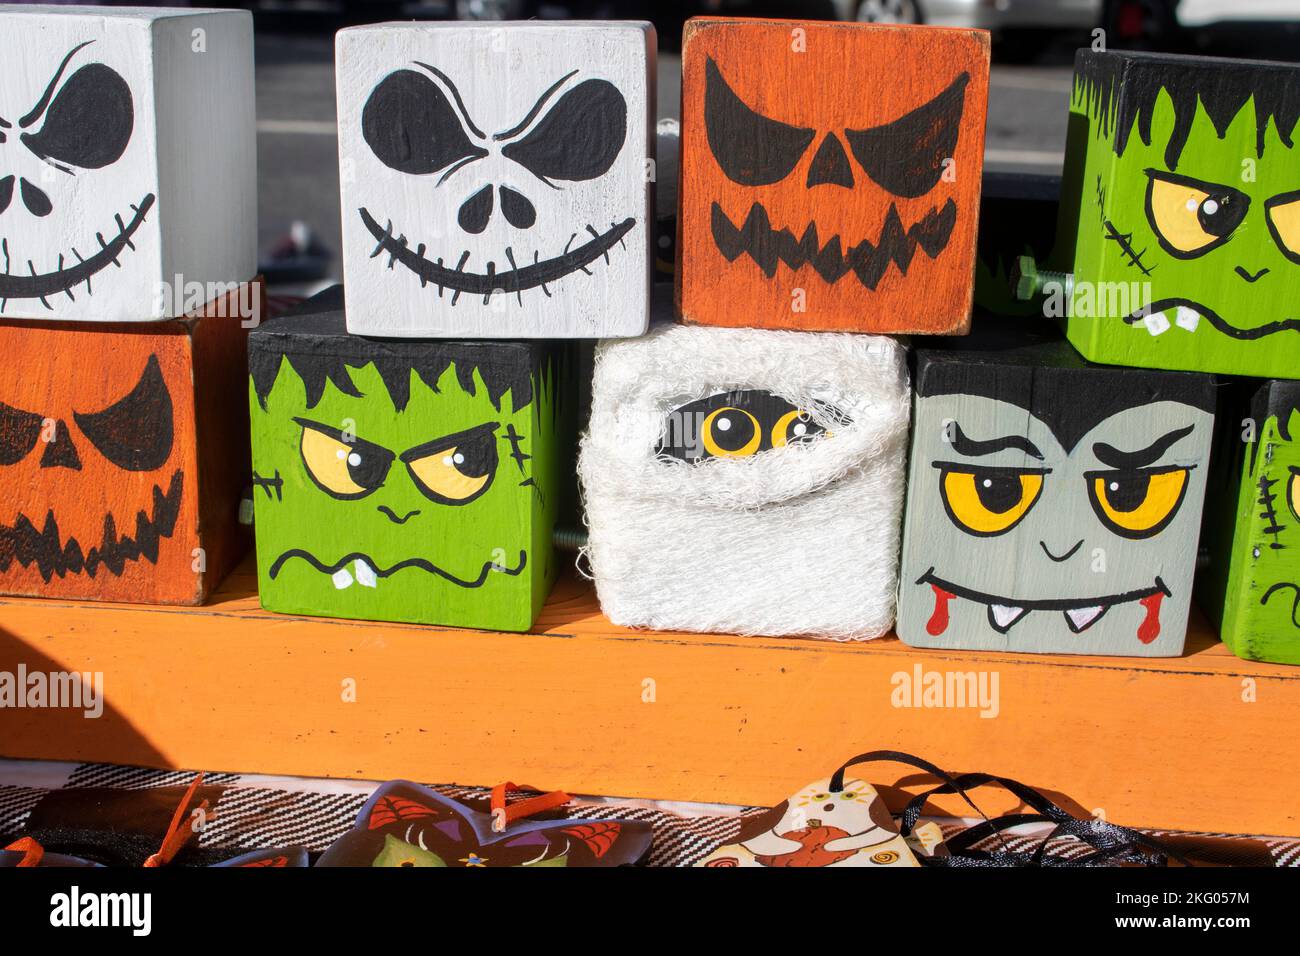 Images des personnages classiques d'Halloween sur des quards en boards Banque D'Images